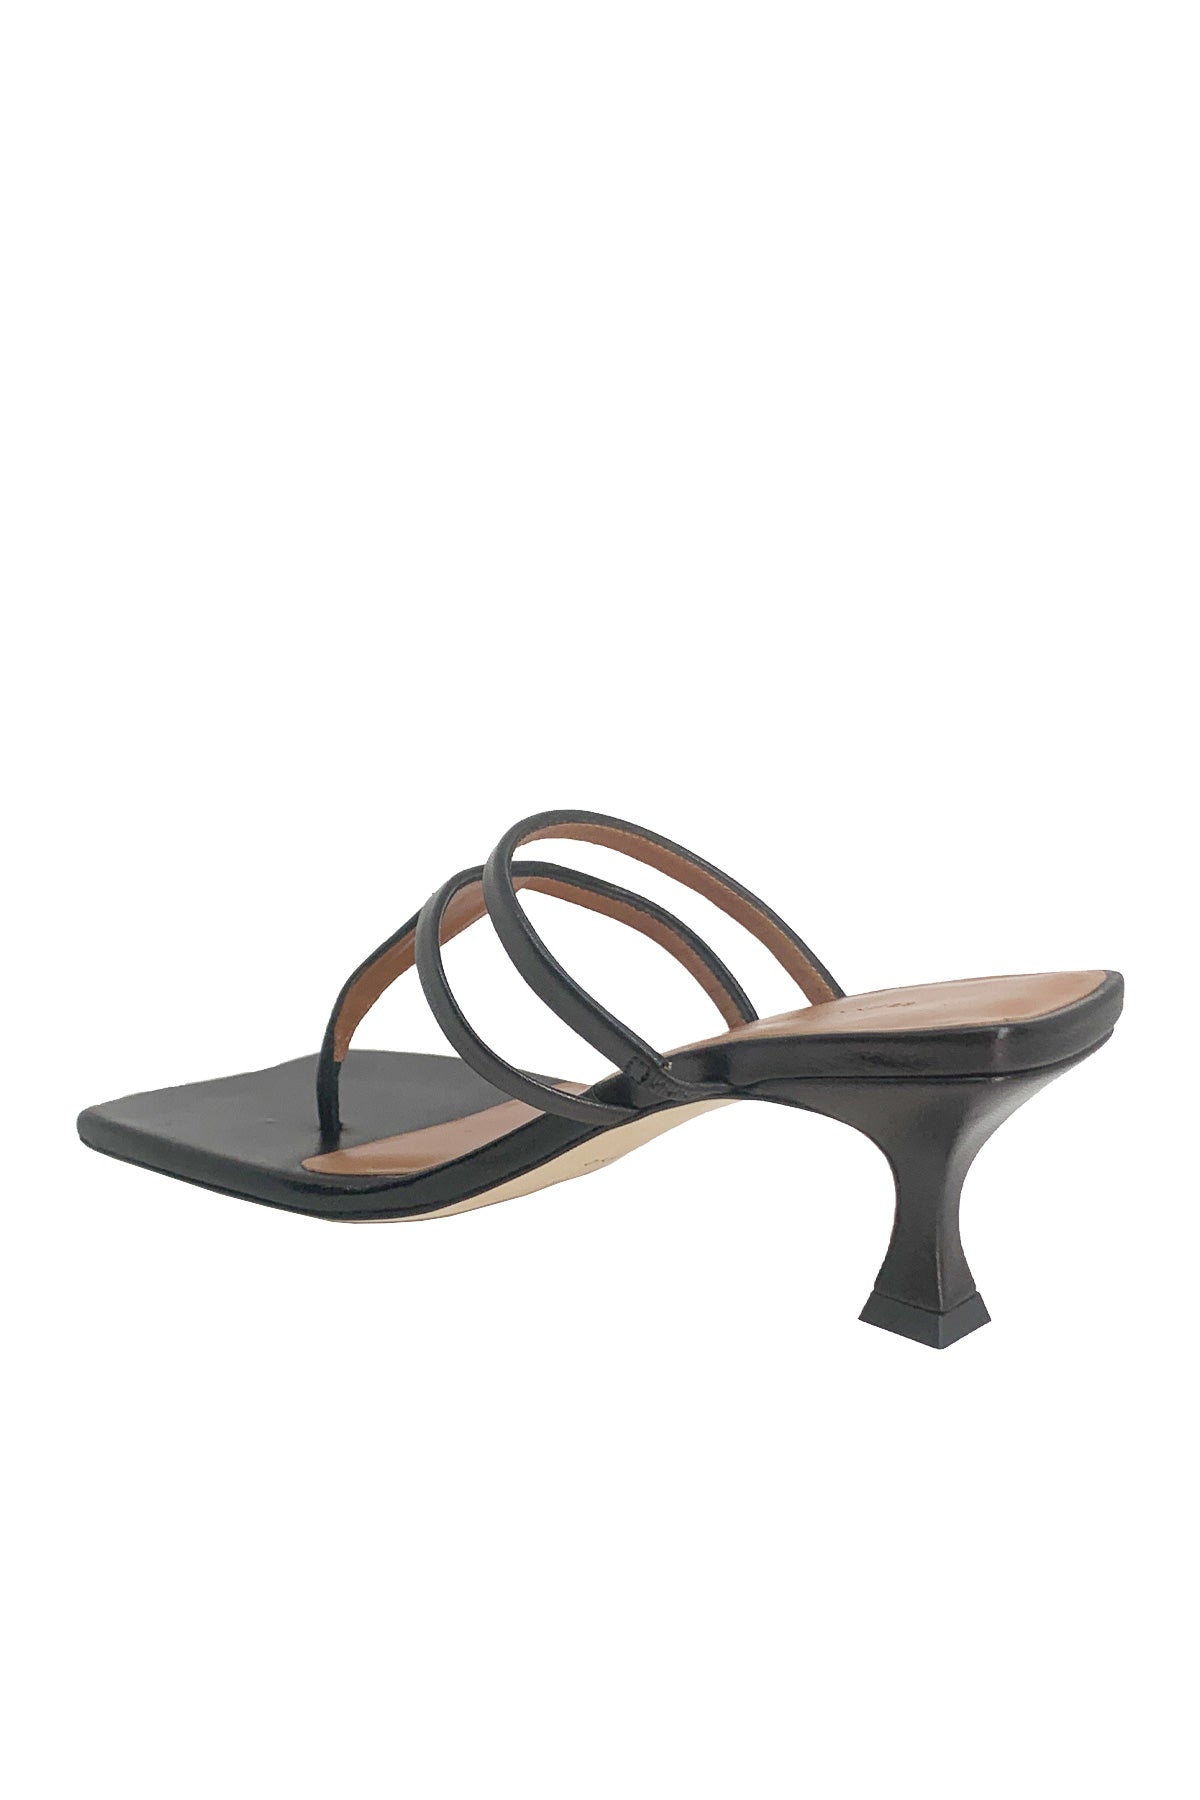 Allie Sandals in Black - shop-olivia.com